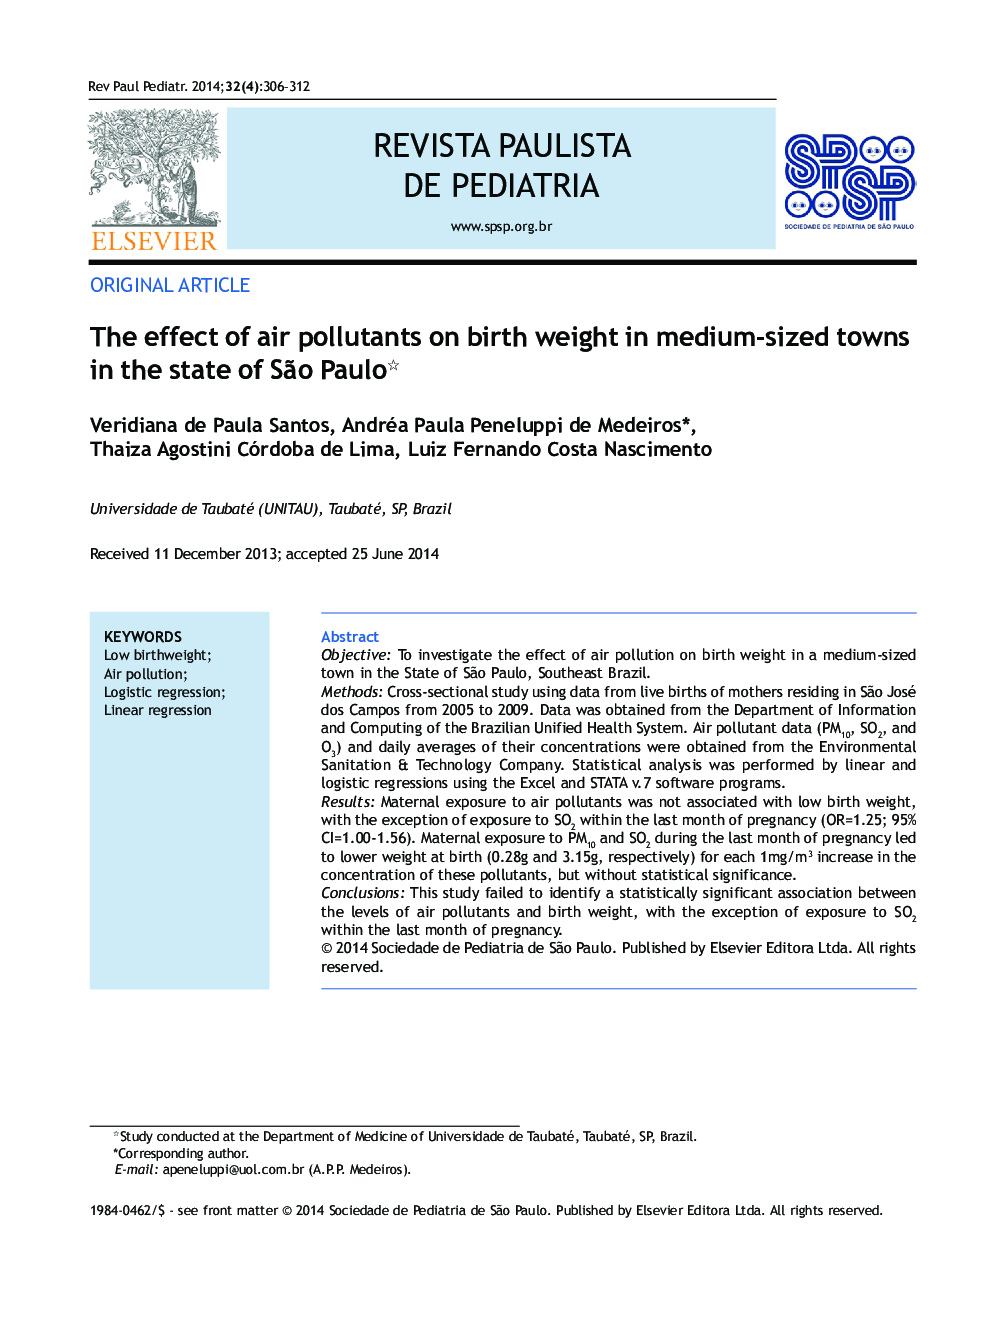 تأثیر آلاینده های هوا بر وزن هنگام تولد در شهر های متوسط ​​در ایالت ساگپو پائولو * 